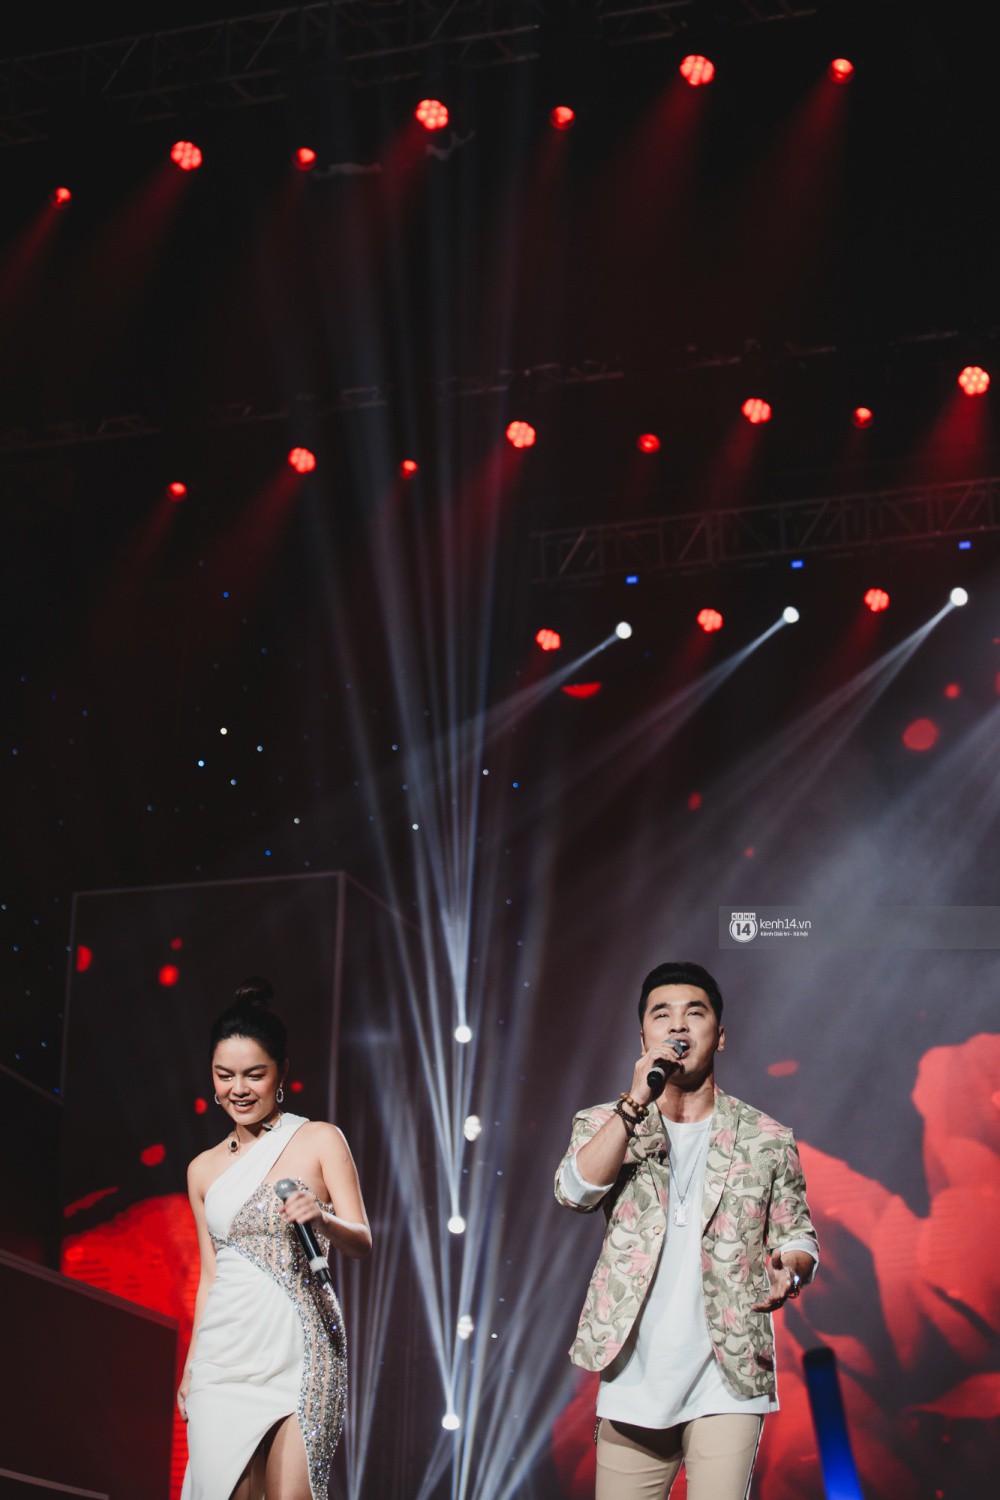 Khoảnh khắc đẹp của dàn sao Việt-Hàn trong show diễn đêm qua khiến khán giả bùng nổ - Ảnh 25.